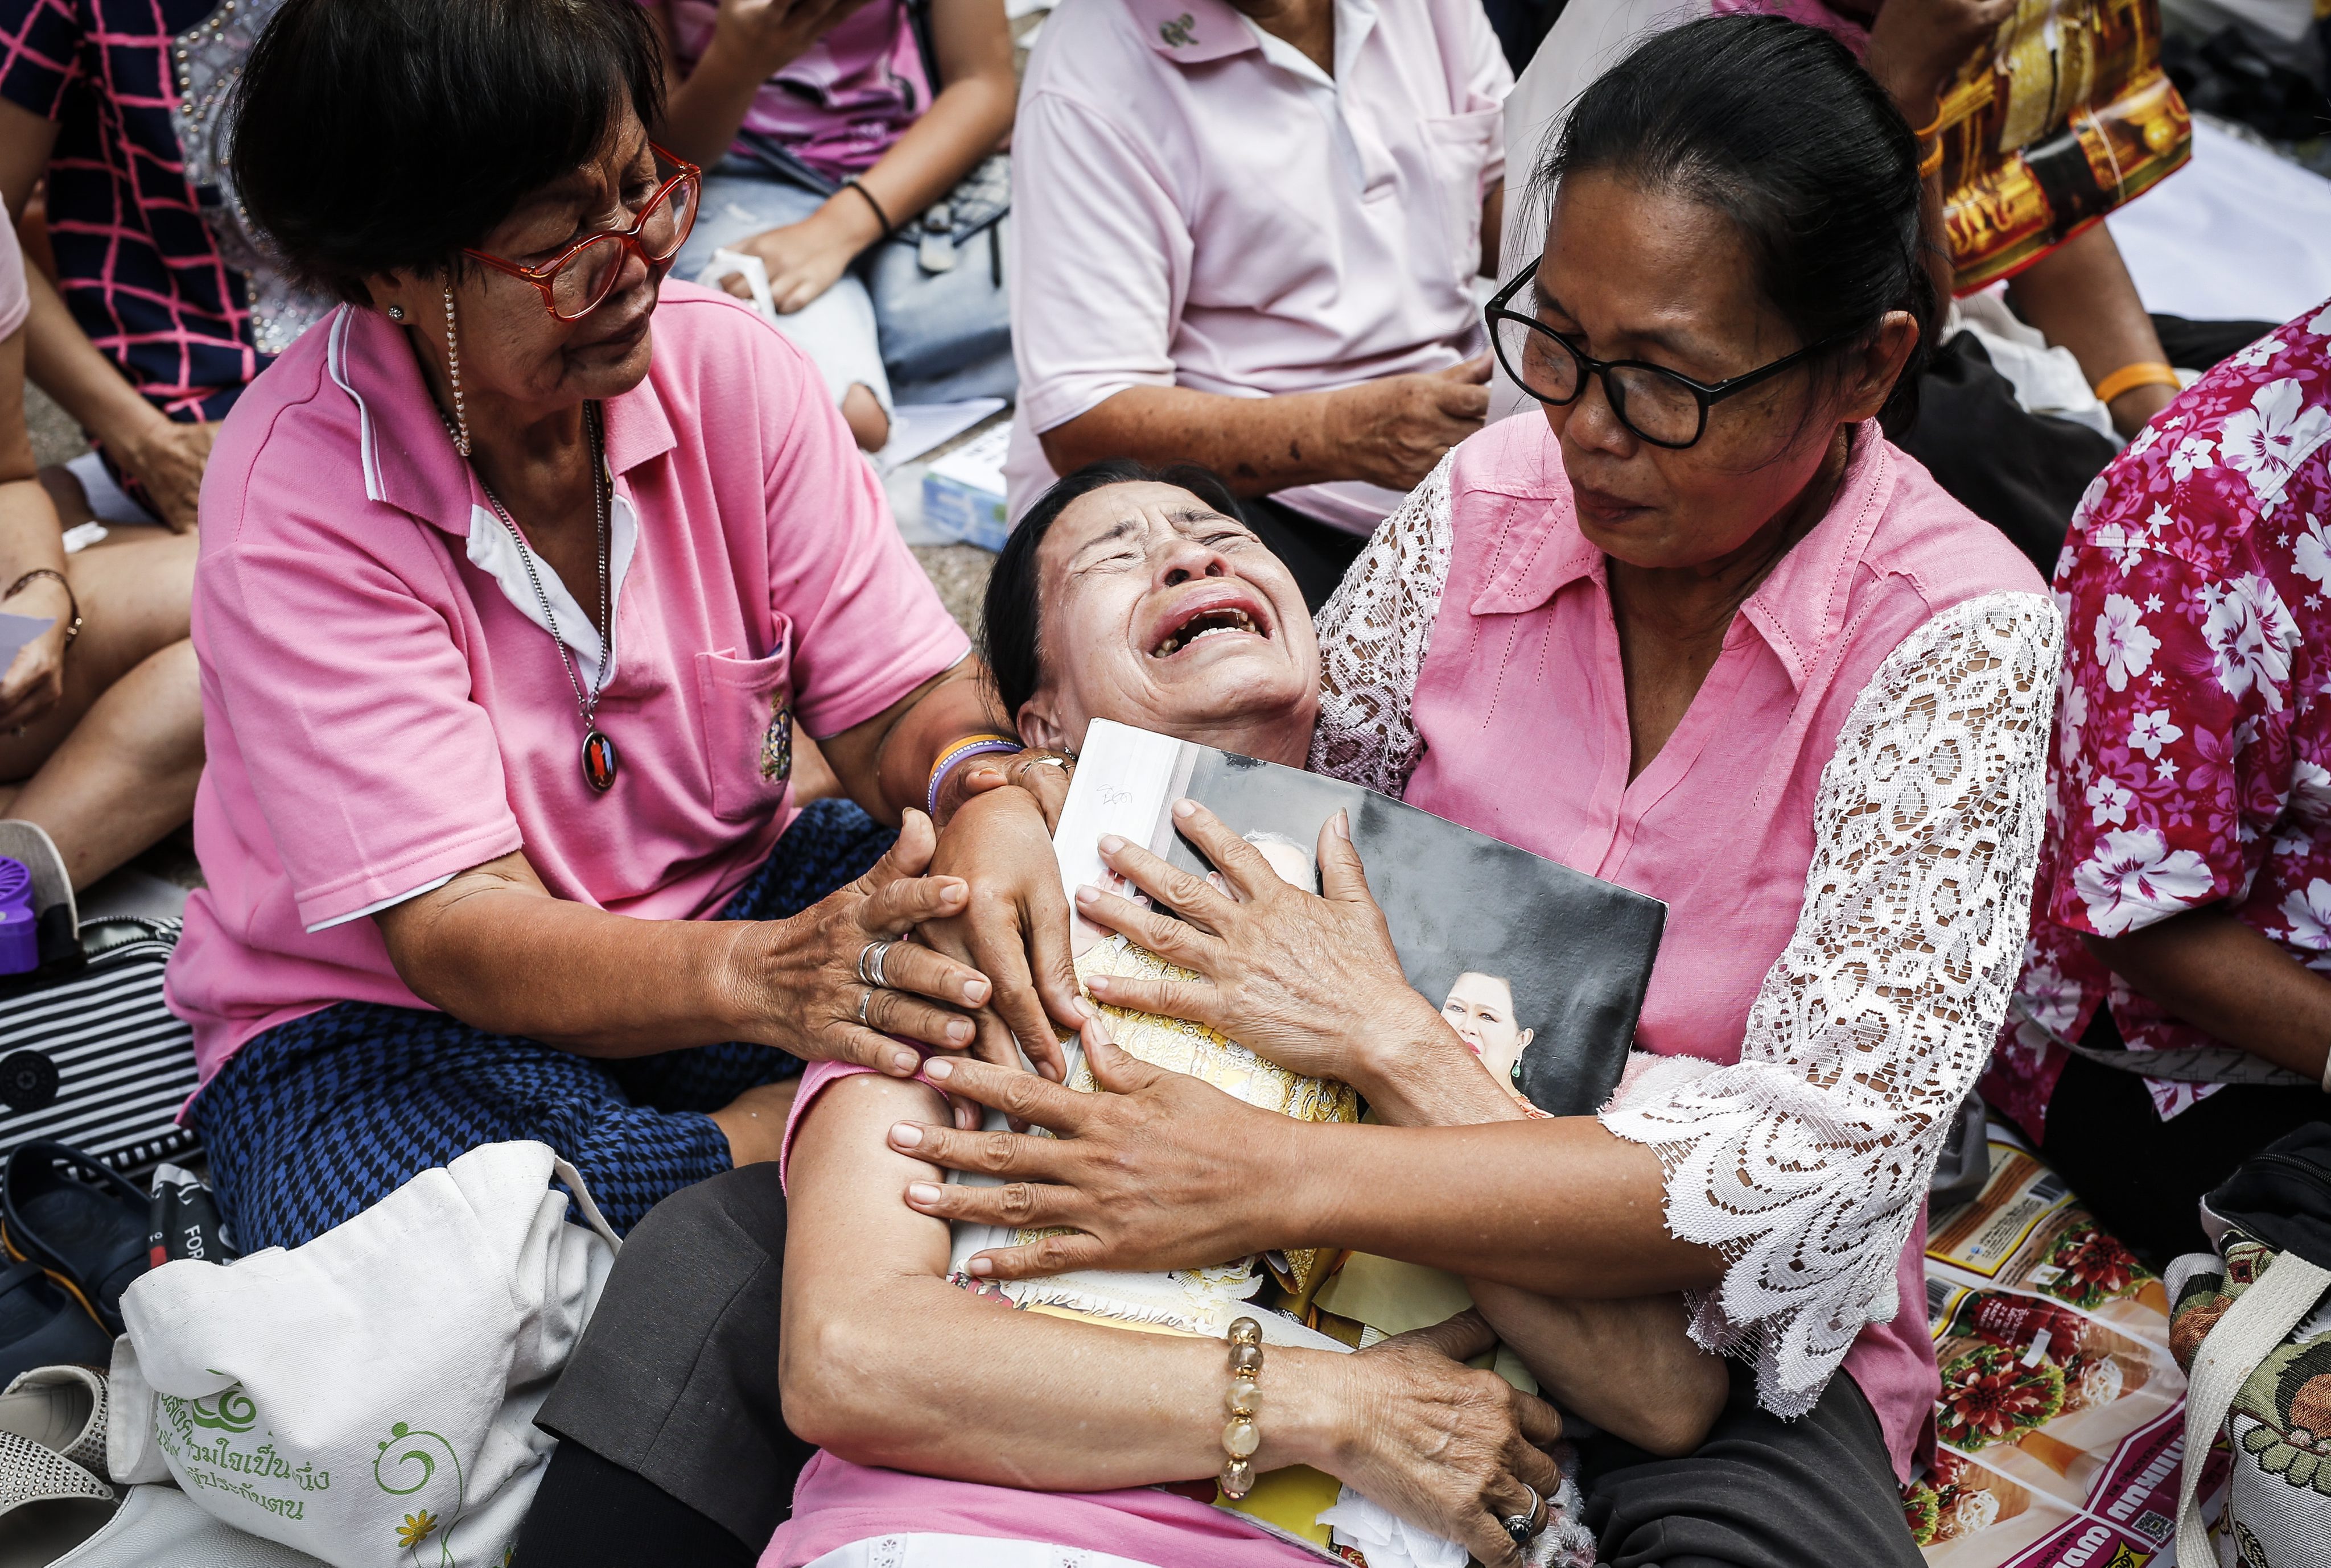 Około godziny 16 czasu lokalnego zmarł otoczony kultem król Tajlandii Bhumibol Adulyadej. Miał 88 lat i był najdłużej panującym monarchą na świecie. Gdy poinformowano o śmierci  Bhumibola Adulyadeja, pacjenci szpitala i obecni w ogrodach ludzie płakali, klękali i modlili się.